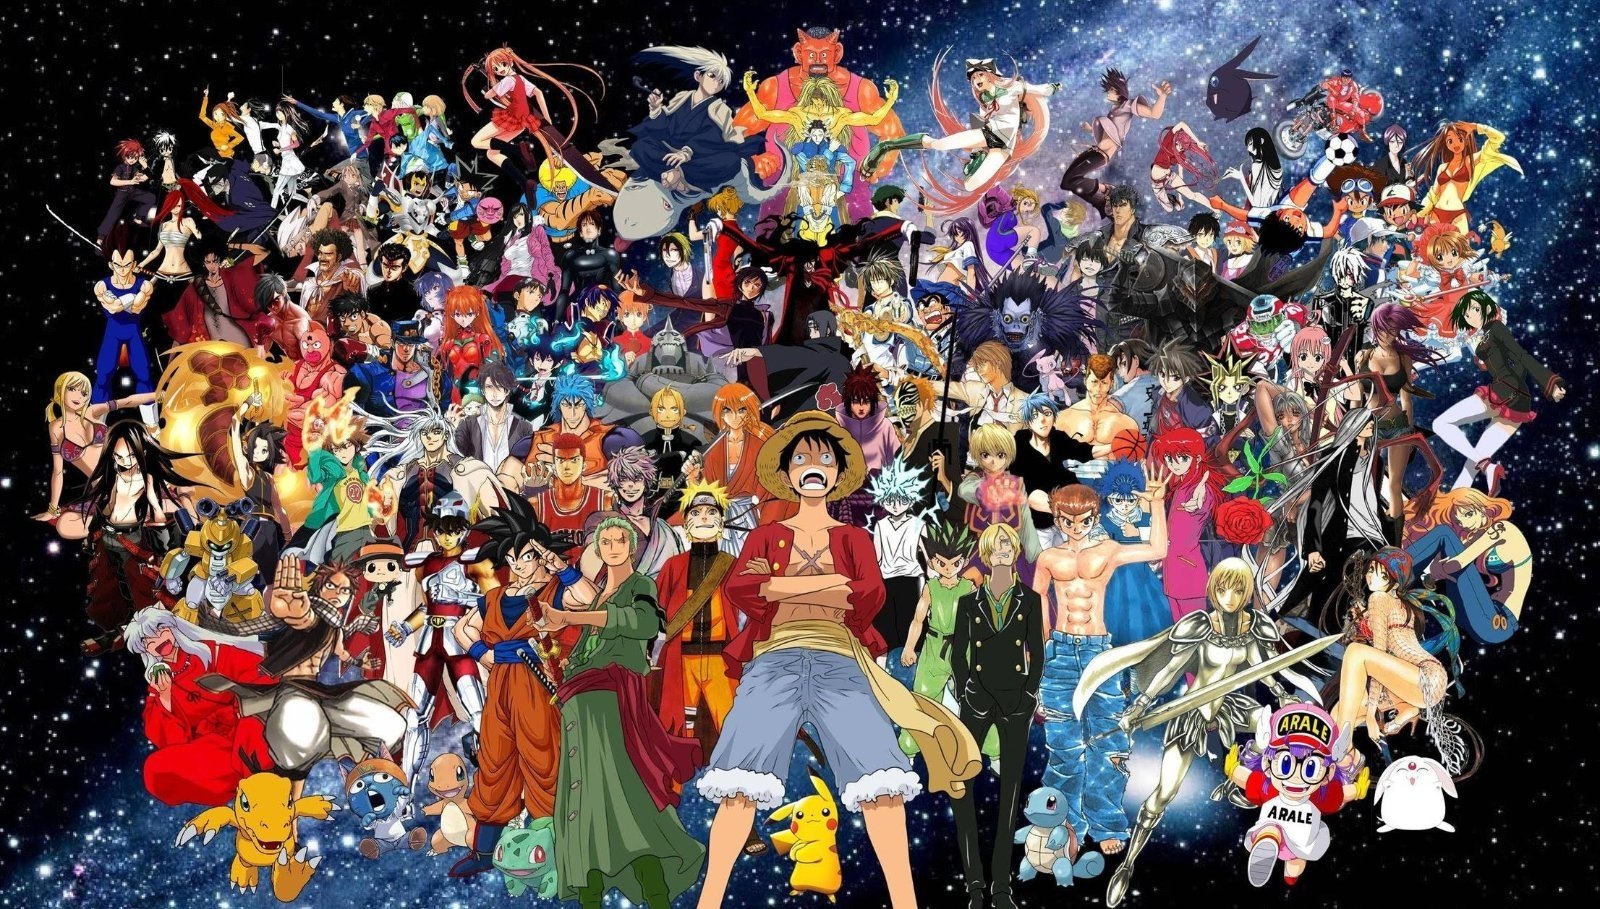 Las 20 muertes más impactantes del anime según los japoneses